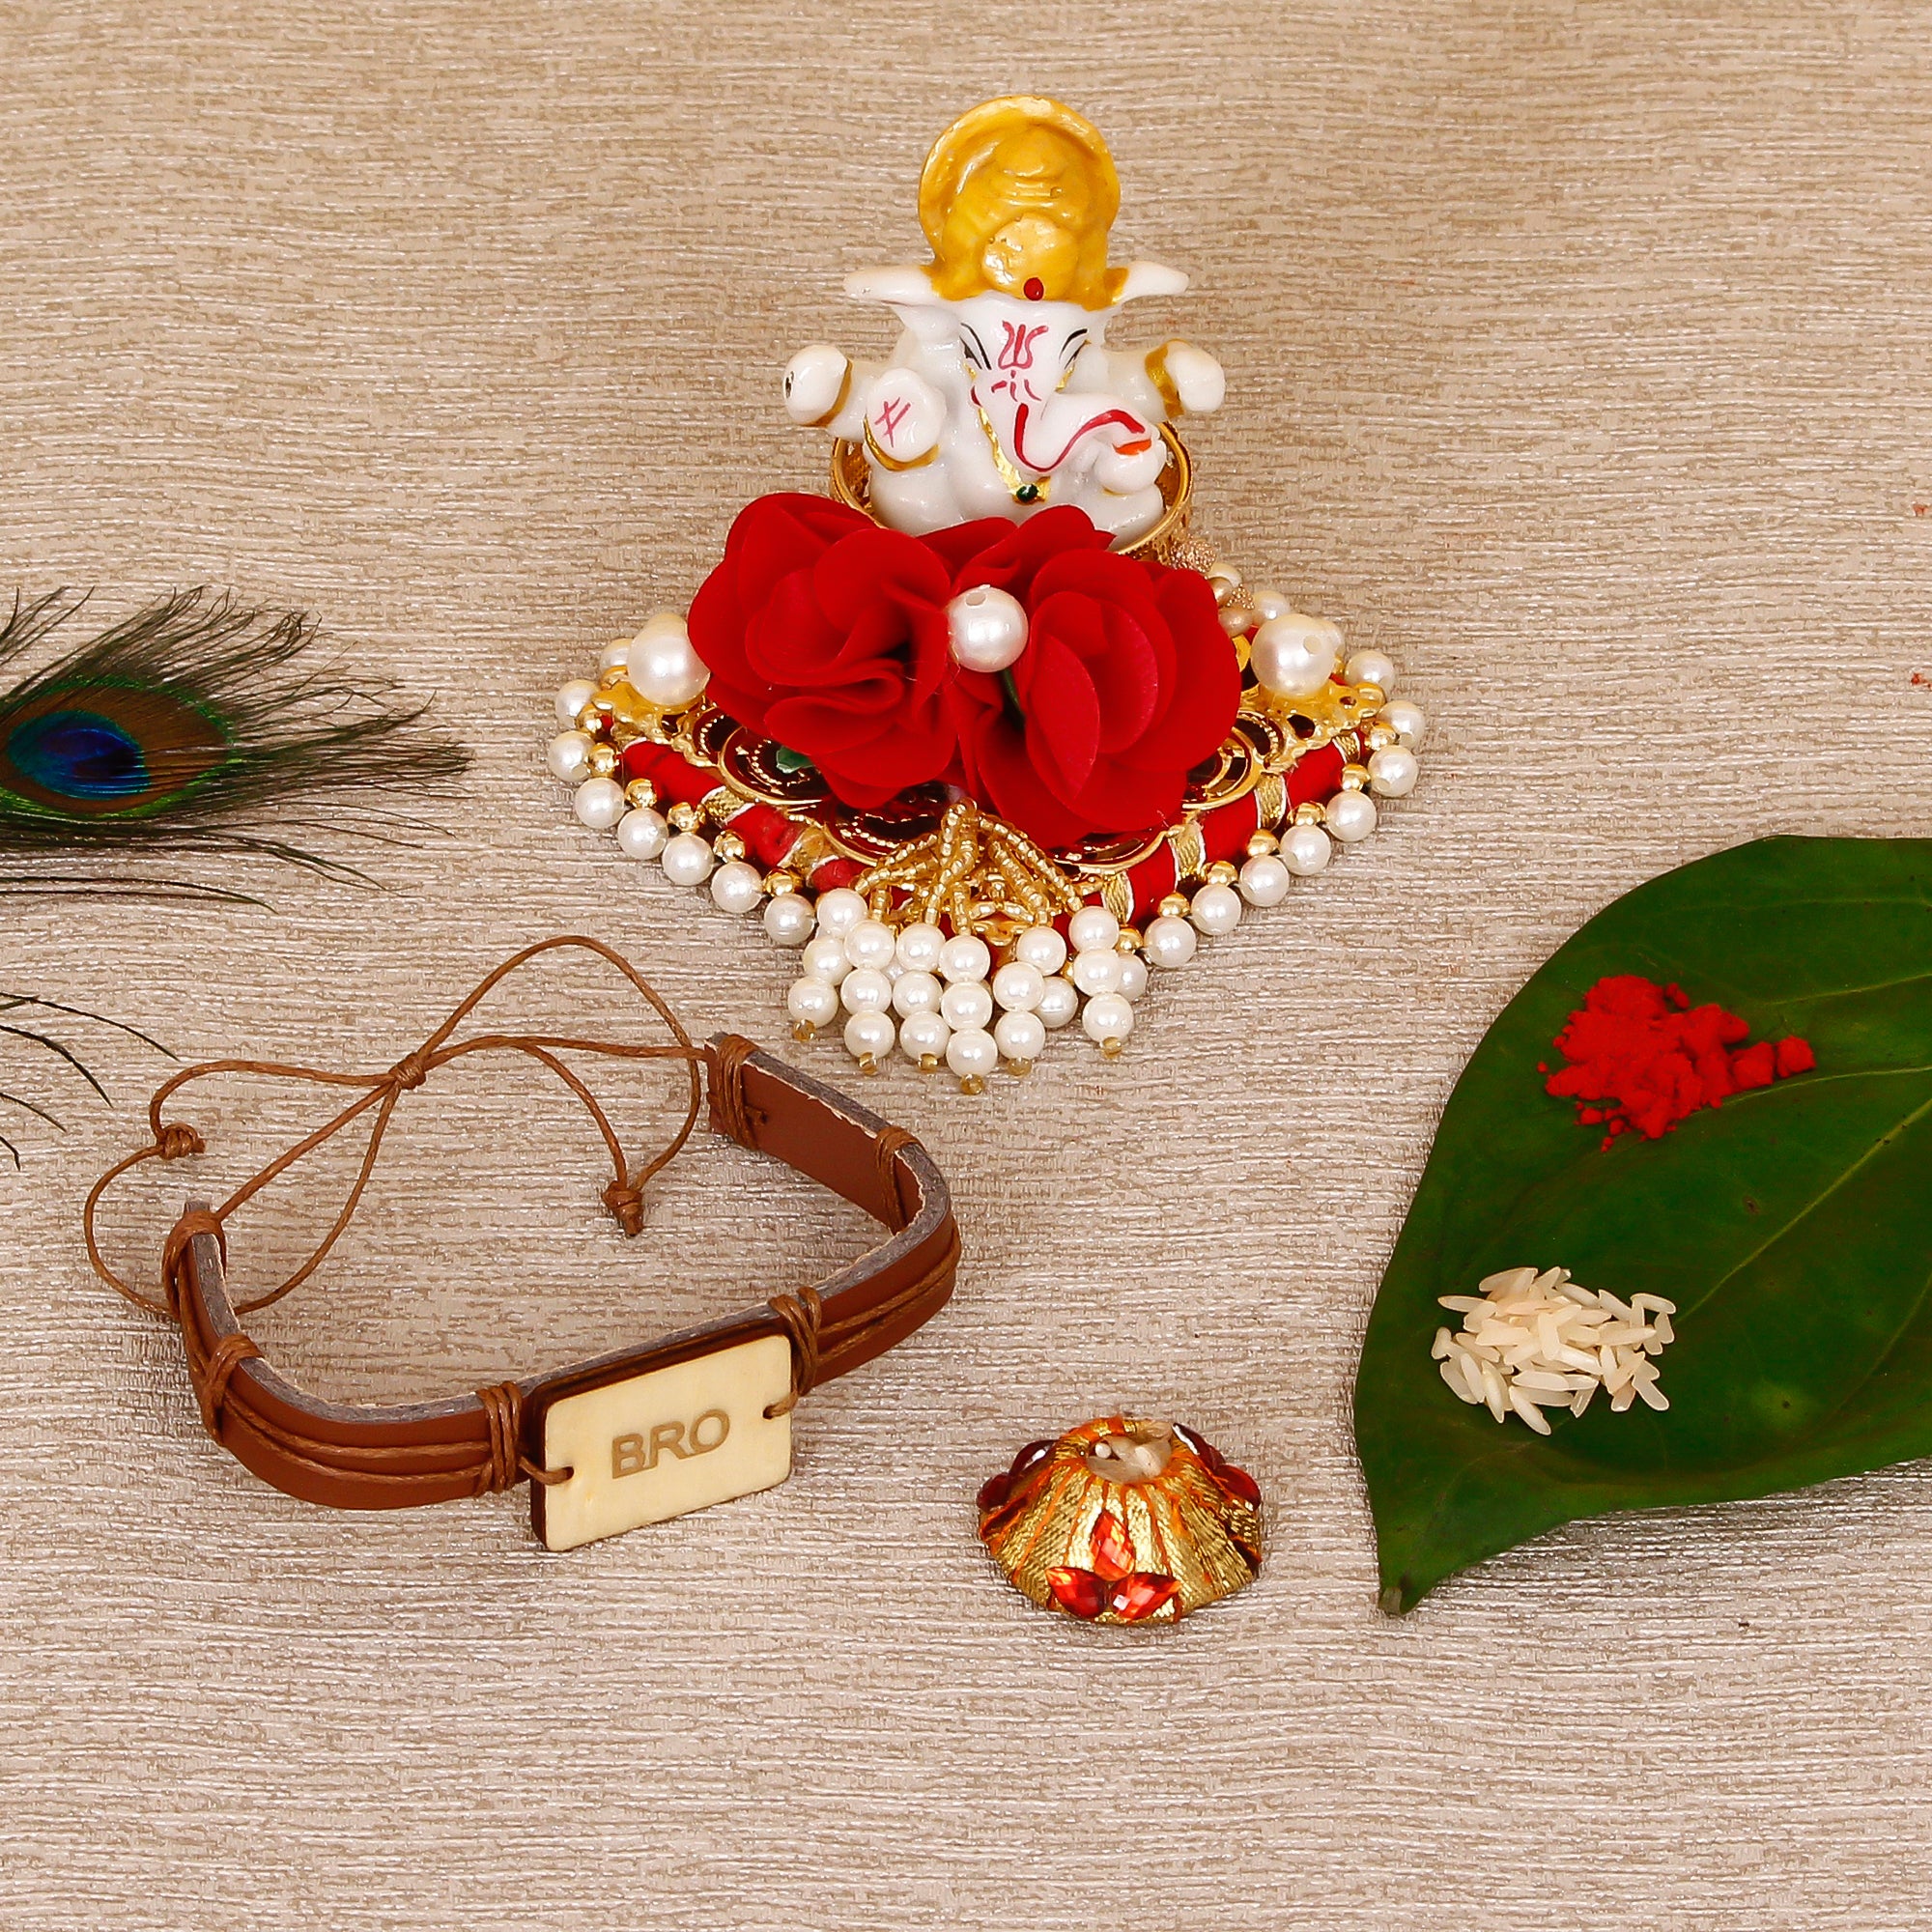 Designer Leather Bracelet BRO Rakhi with Lord Ganesha Idol on Decorative Plate for Car & Home and Roli Tikka Matki